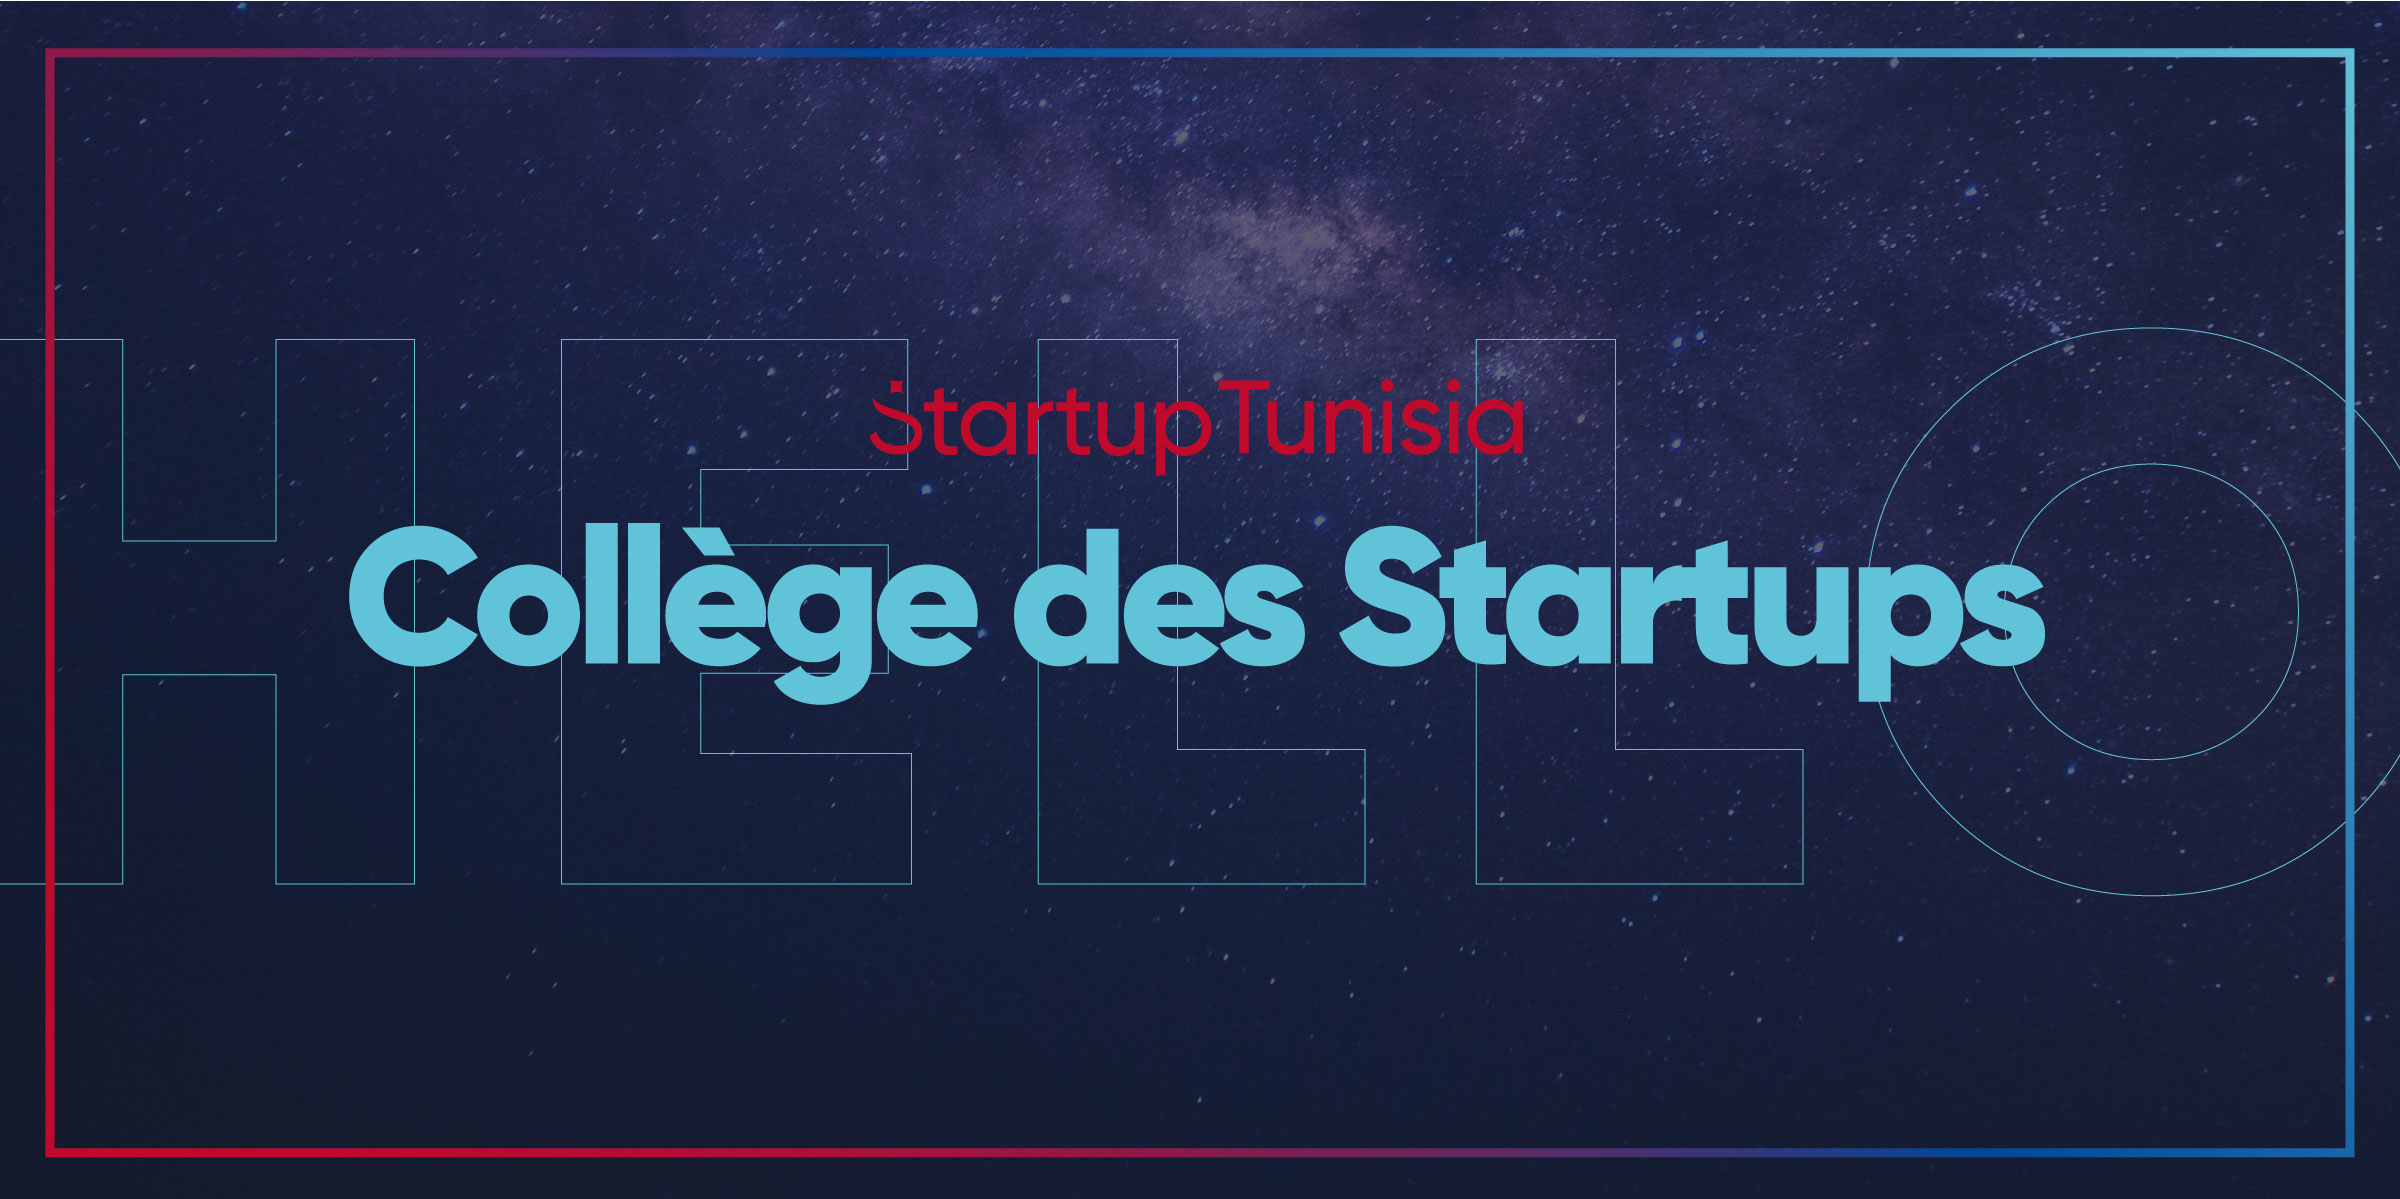 Le nouveau Collège des Startups prend la relève pour assurer la continuité du programme Startup Tunisia